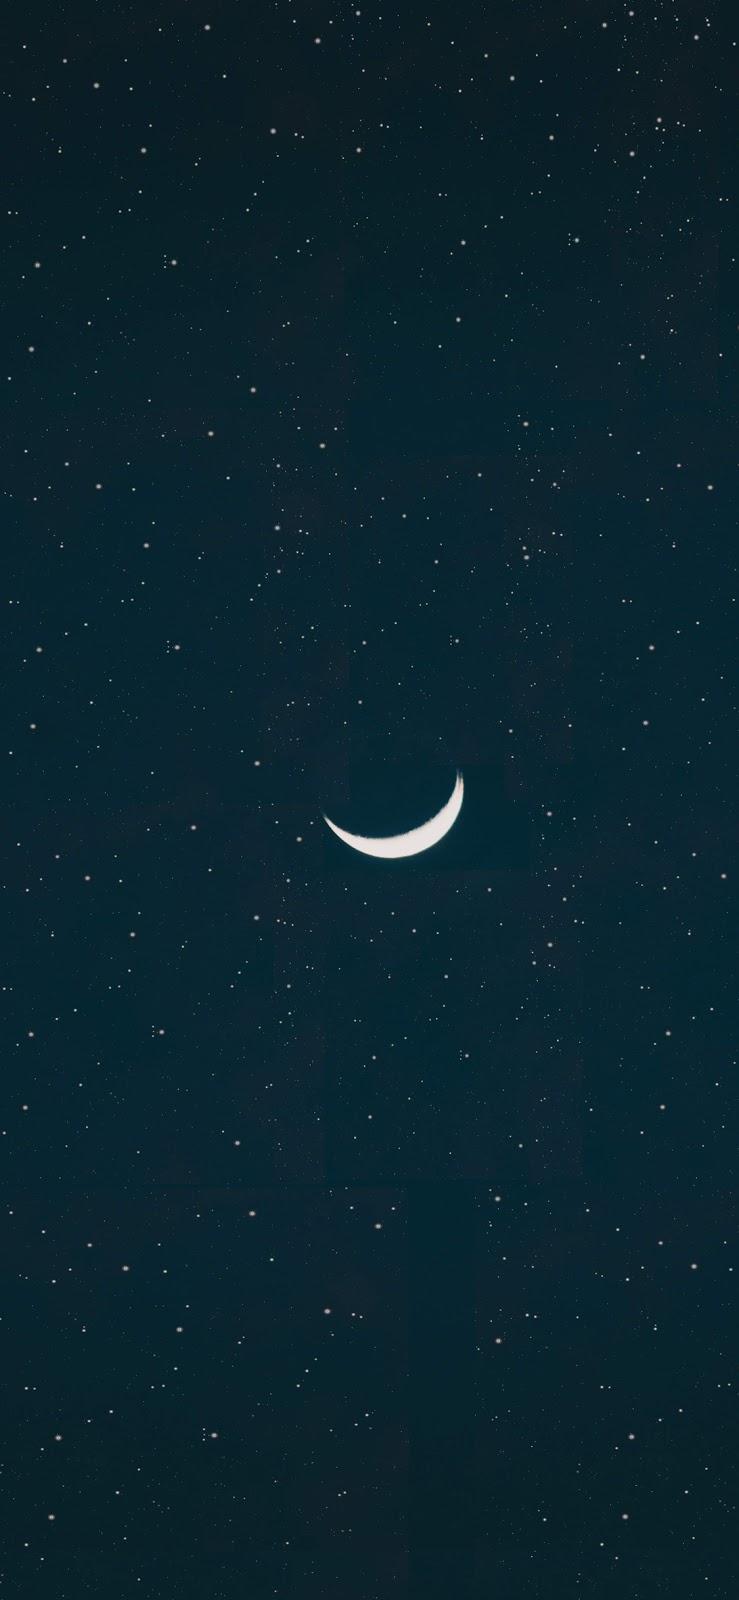 crescent moon wallpaper iphone x